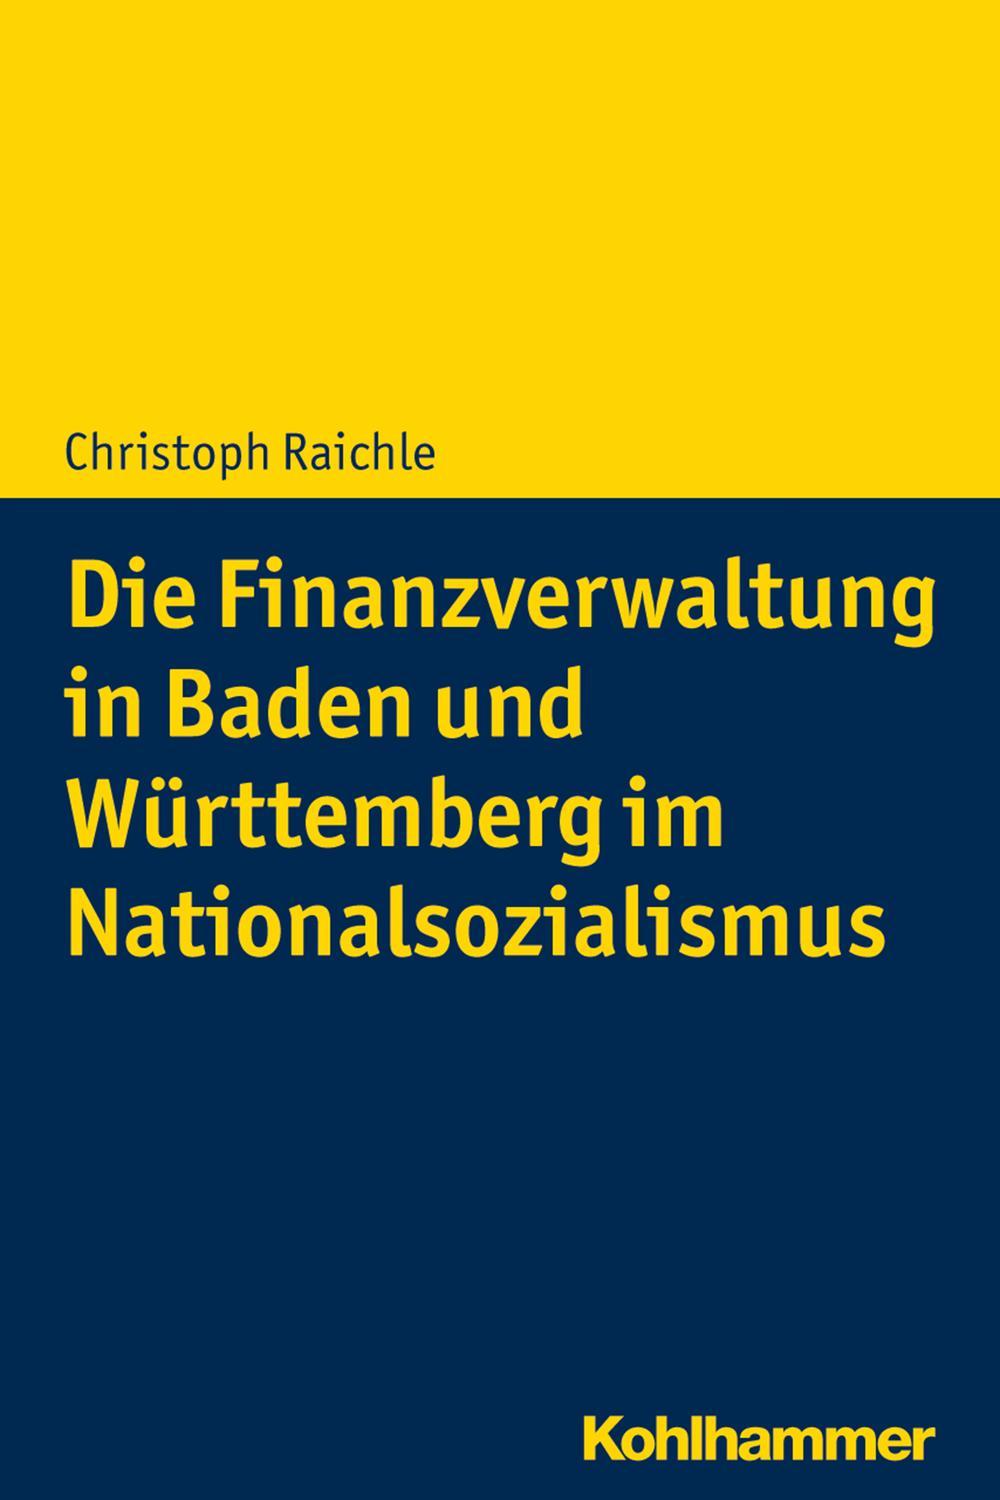 Die Finanzverwaltung in Baden und Württemberg im Nationalsozialismus - Christoph Raichle